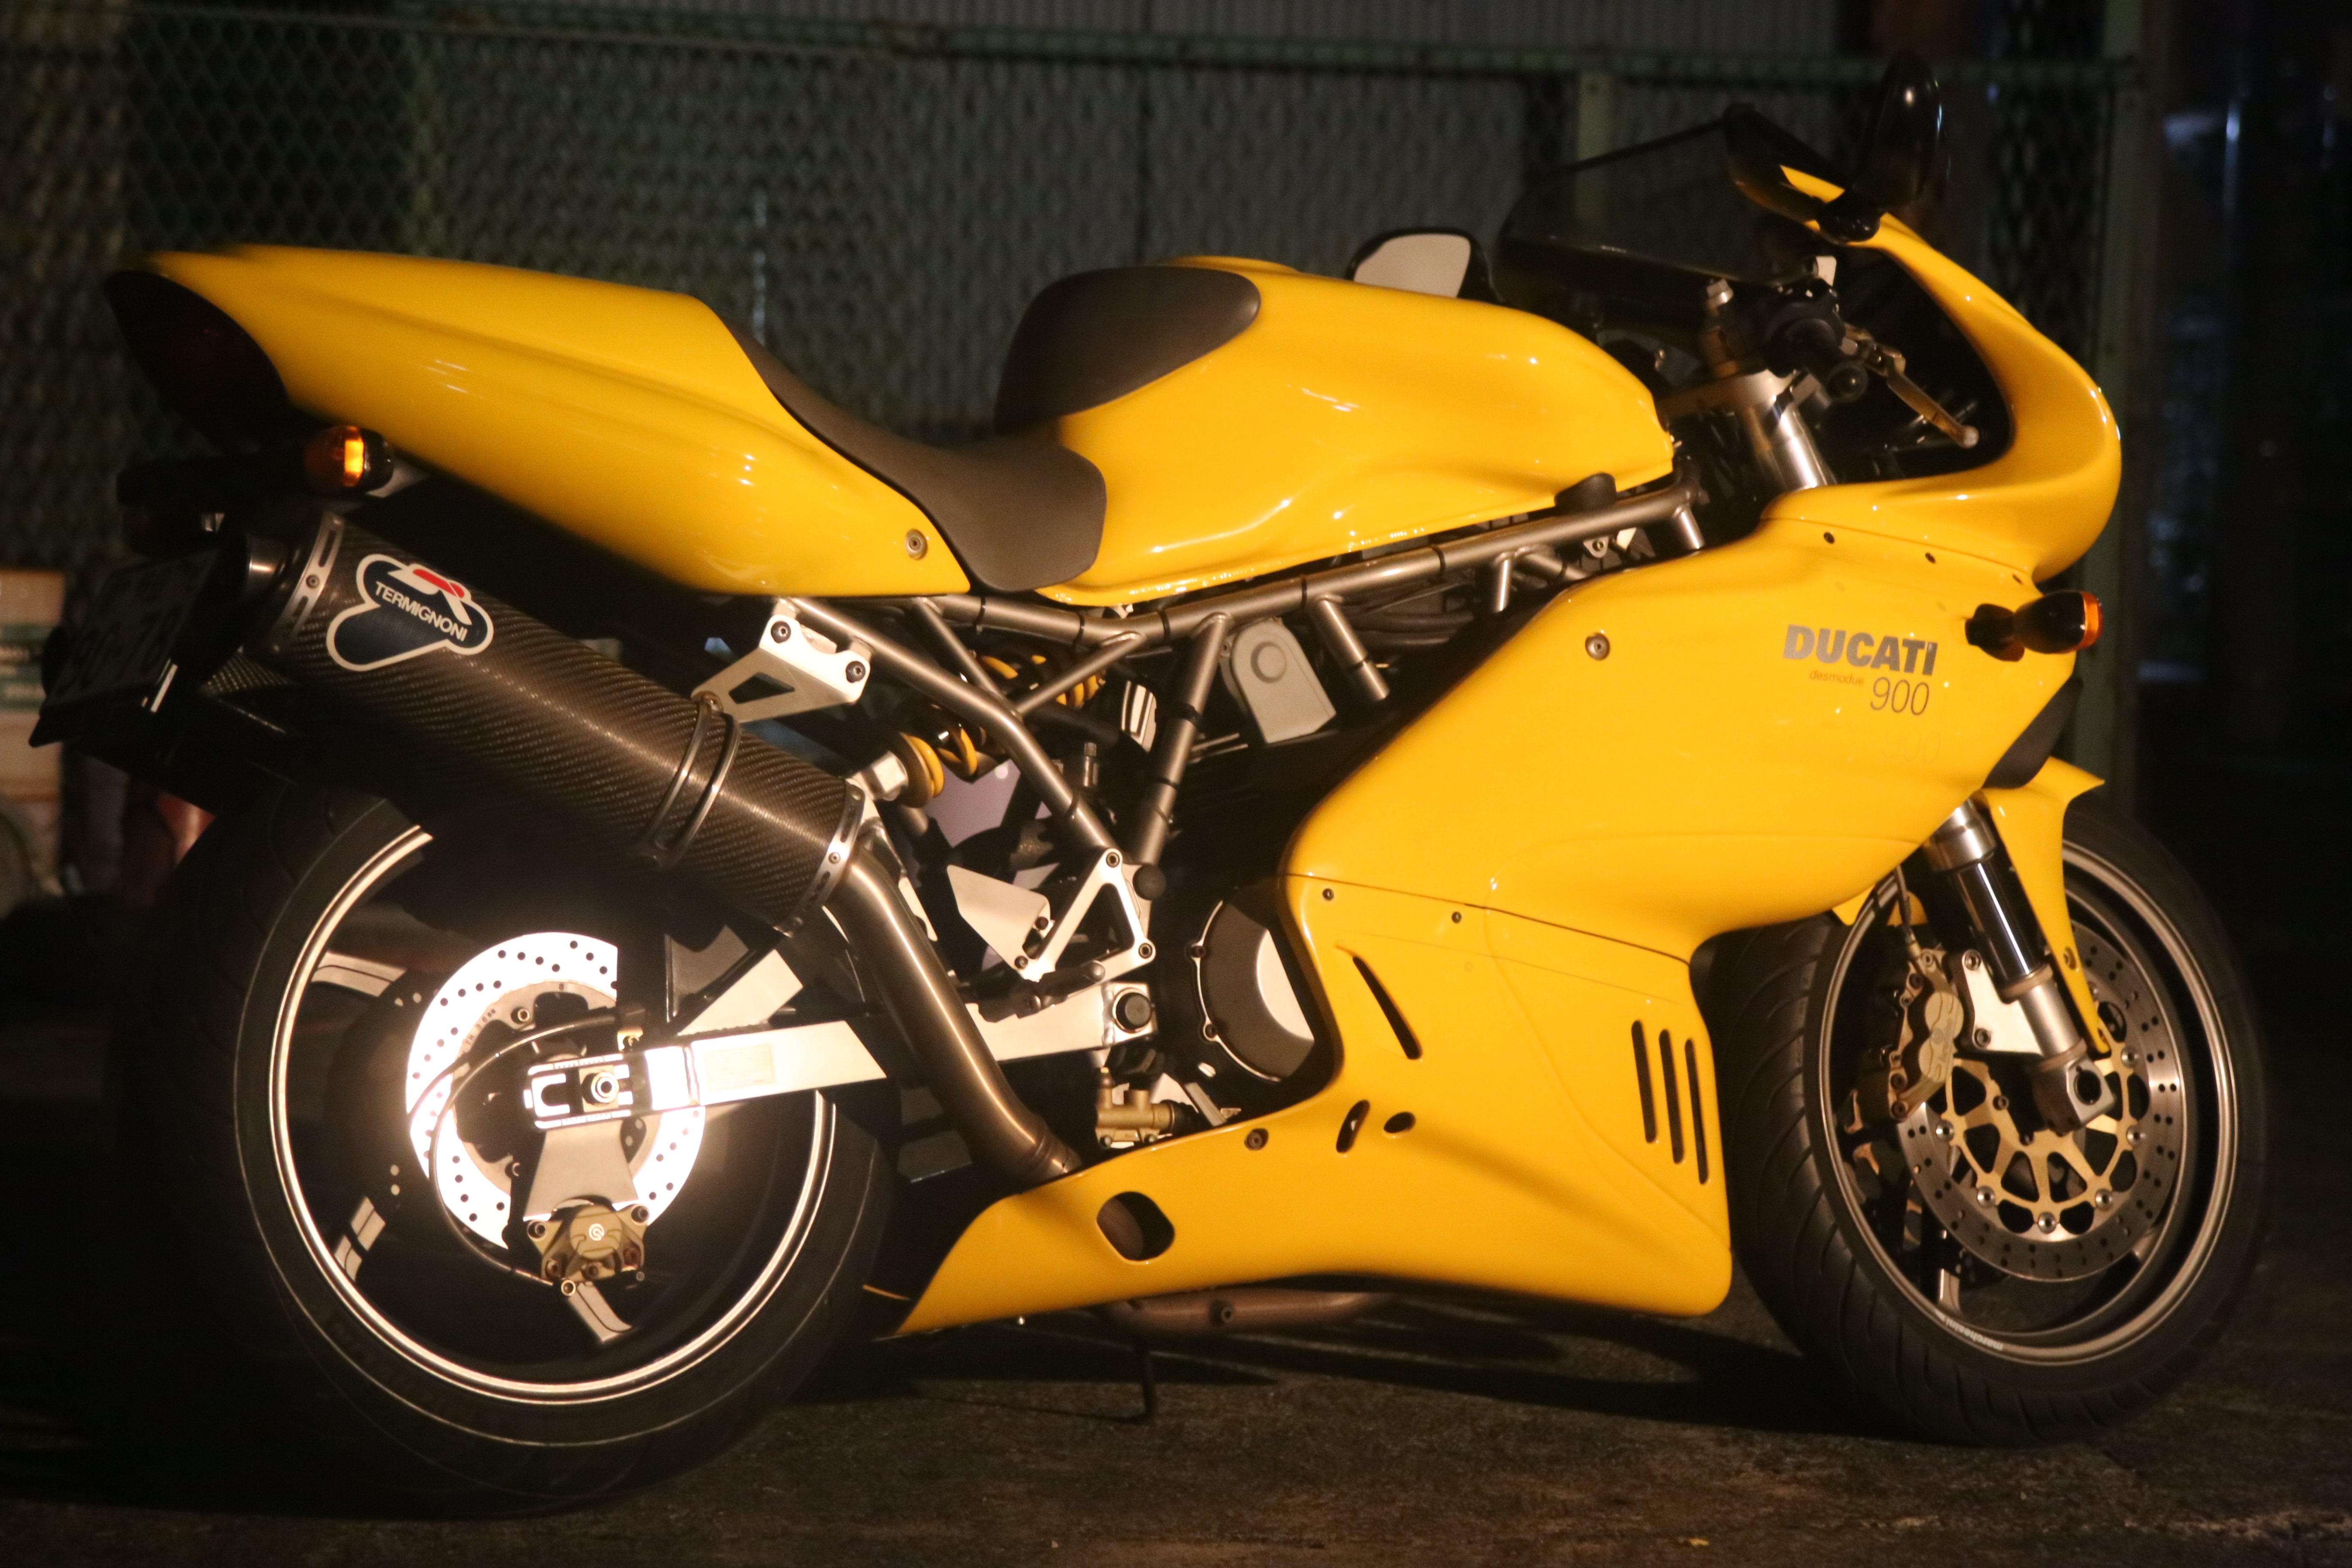 Ducati SS900